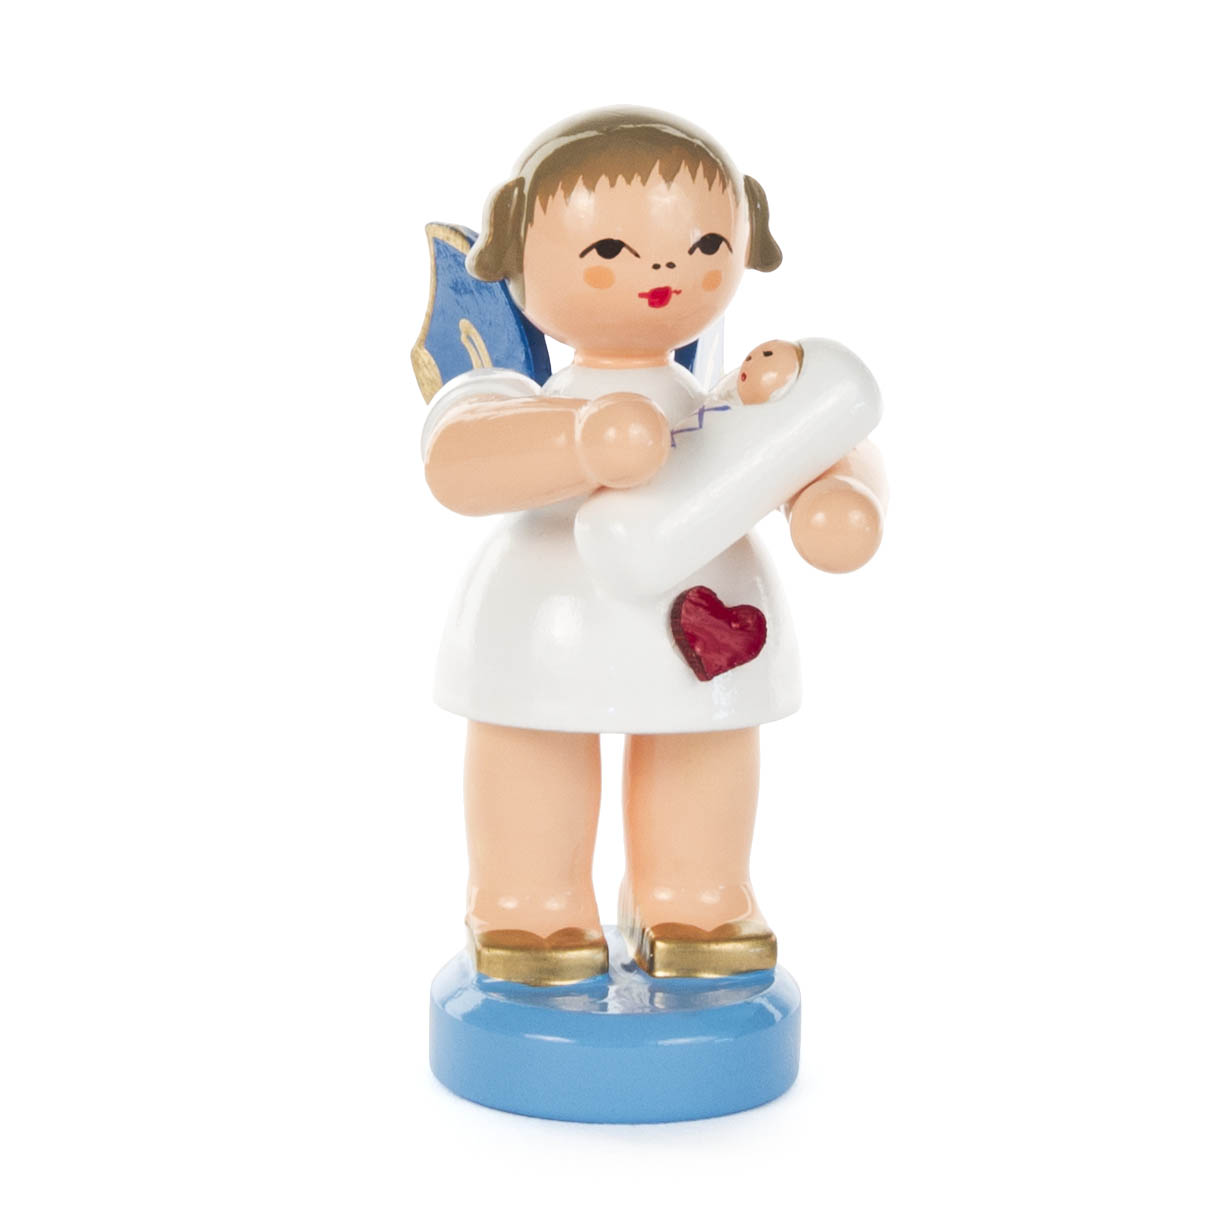 Herzengel mit Baby Junge stehend, blaue Flügel im Dregeno Online Shop günstig kaufen